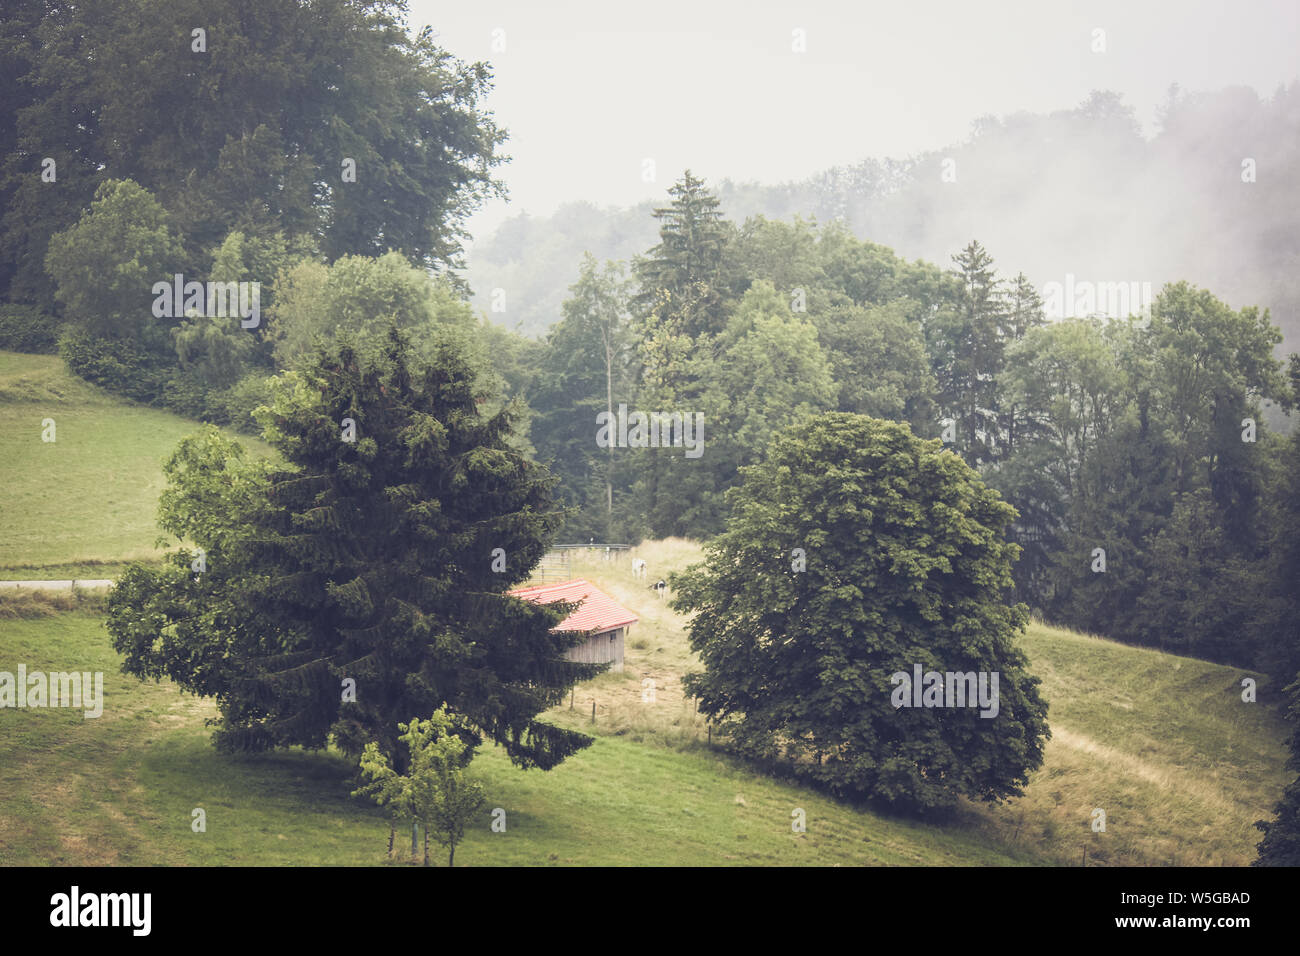 Moody paysage d'automne dans la région de Vaud, Suisse. Les paysages brumeux. Brouillard, brouillard. Vintage Retro, style hippie. Maison solitaire sur un champ. Alpes suisses. Banque D'Images